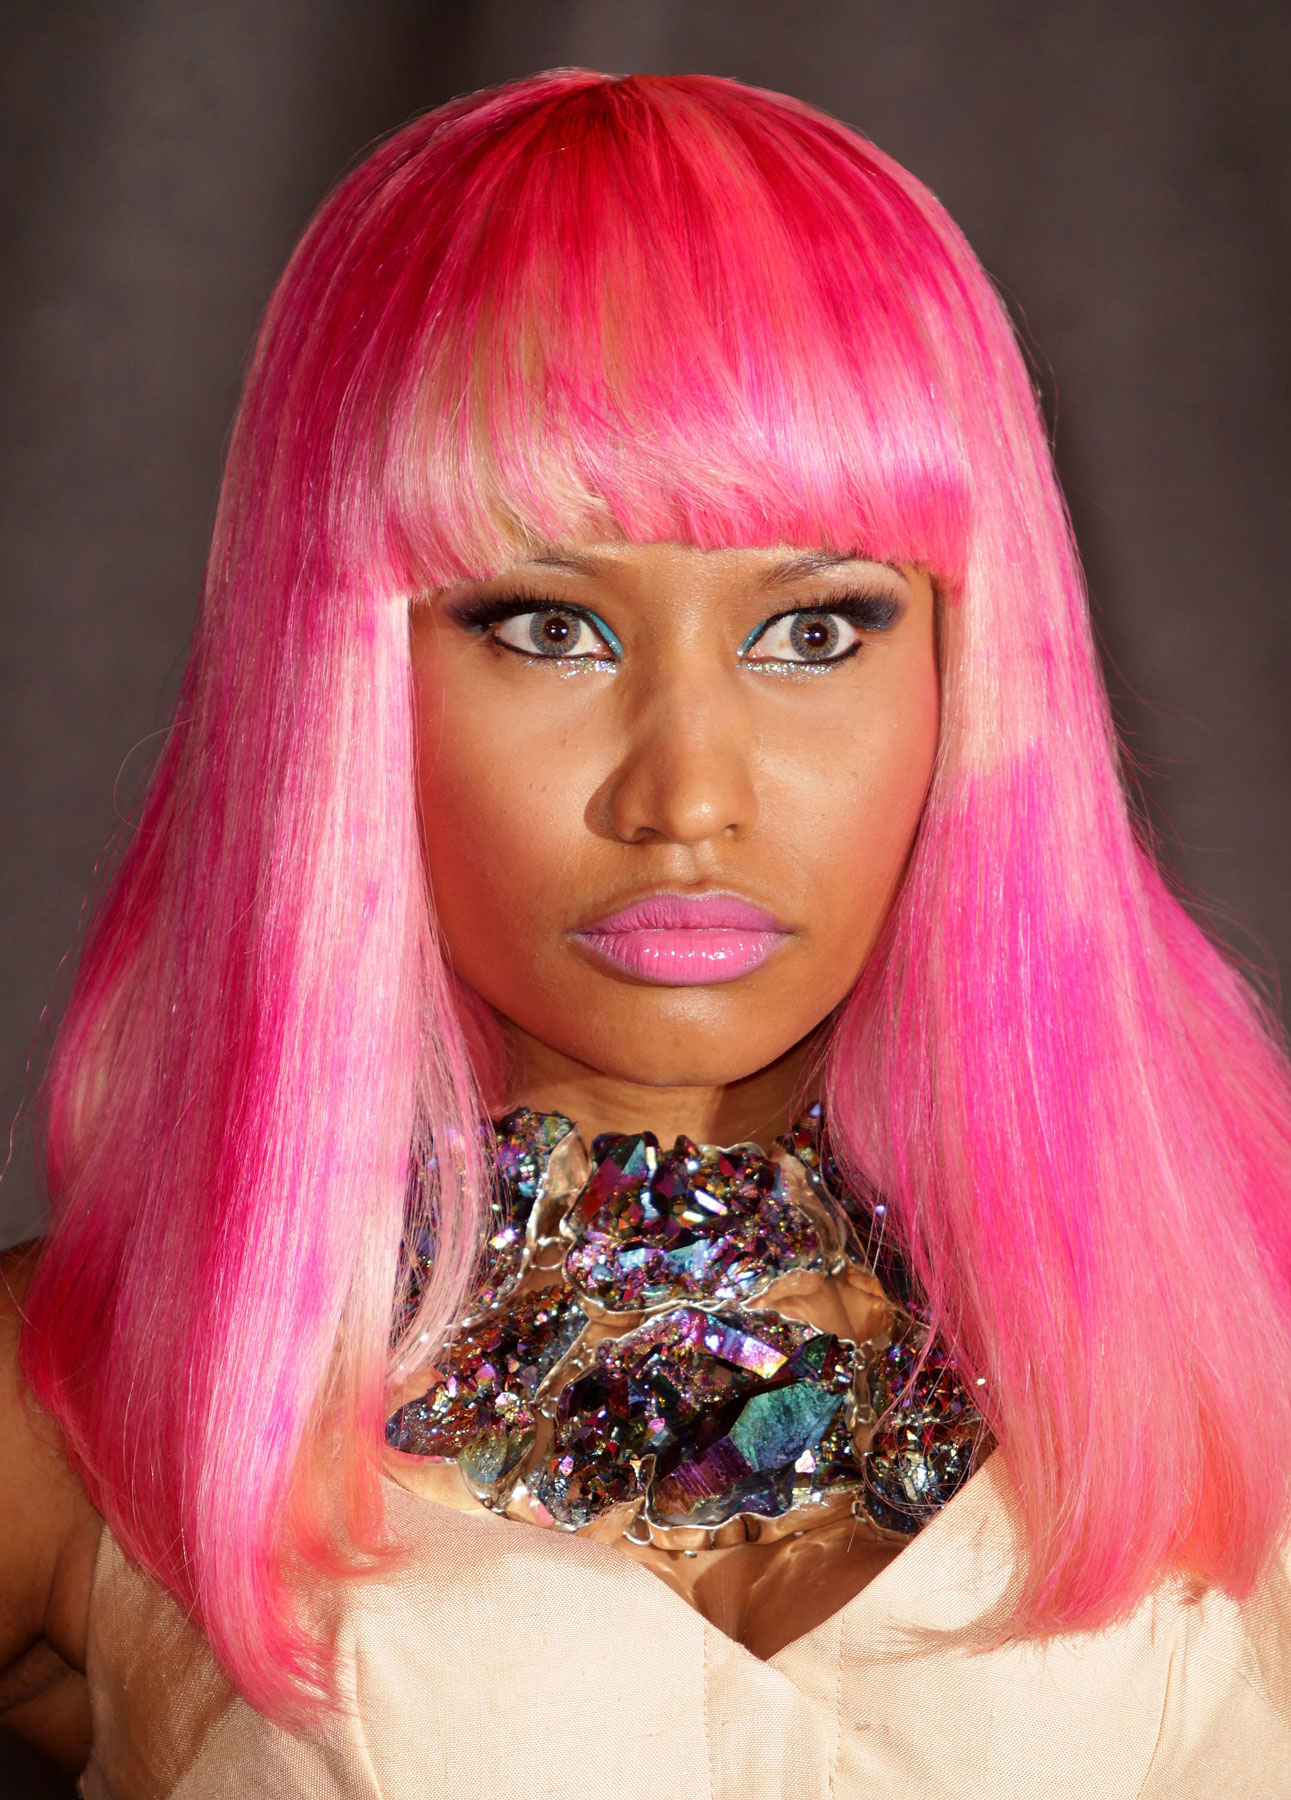 General photo of Nicki Minaj